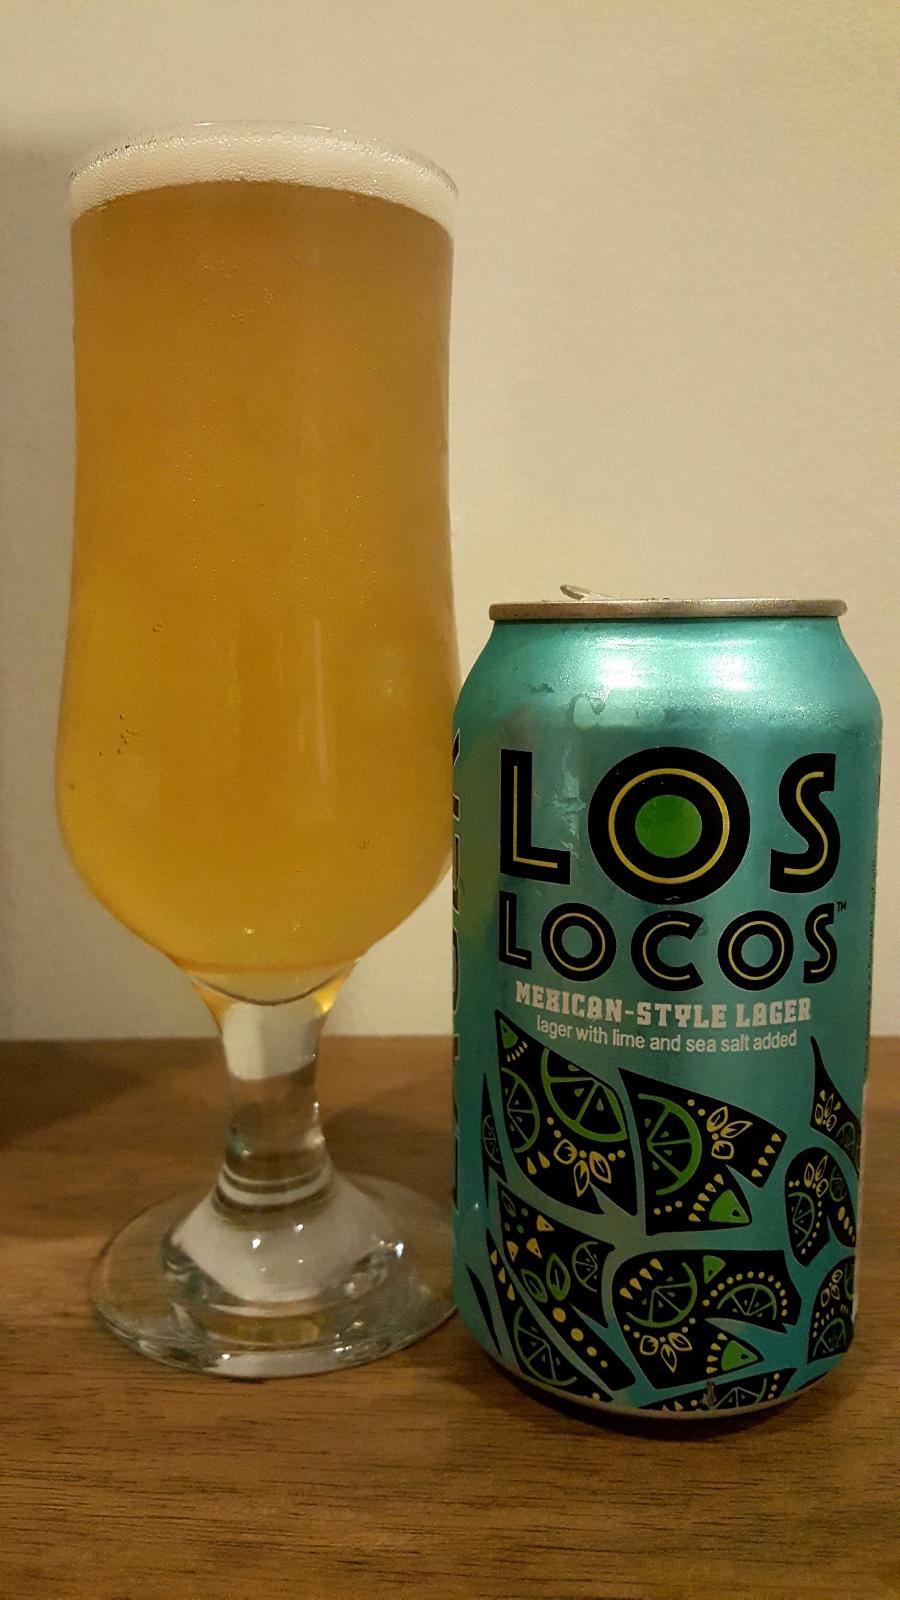 Los Locos